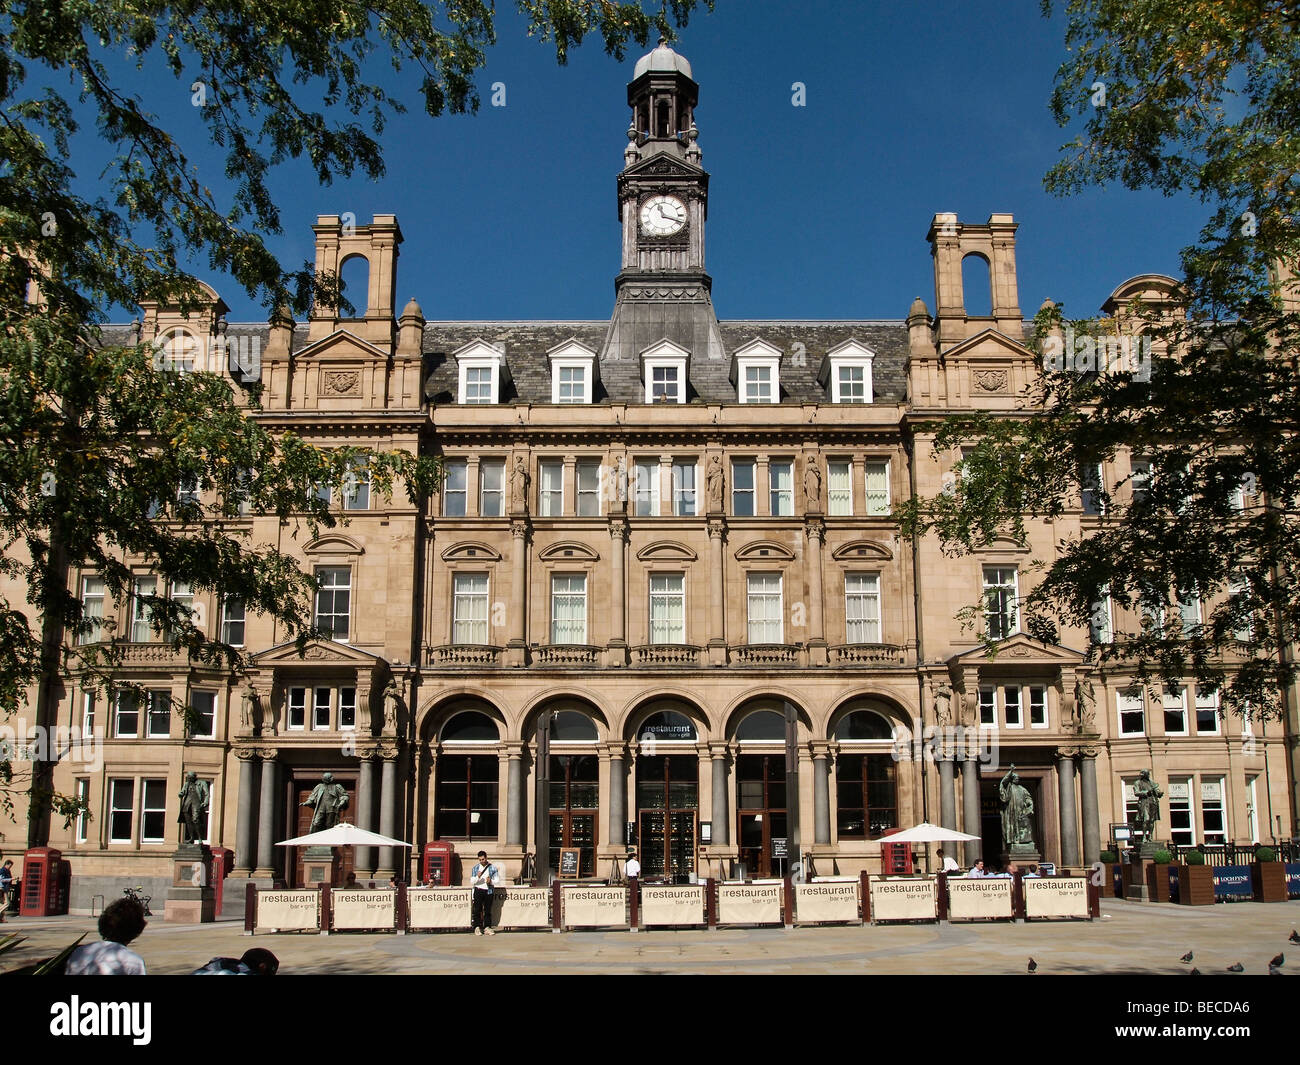 Old Post Office convertidos en restaurantes y apartamentos en la Plaza de la ciudad de Leeds UK Foto de stock